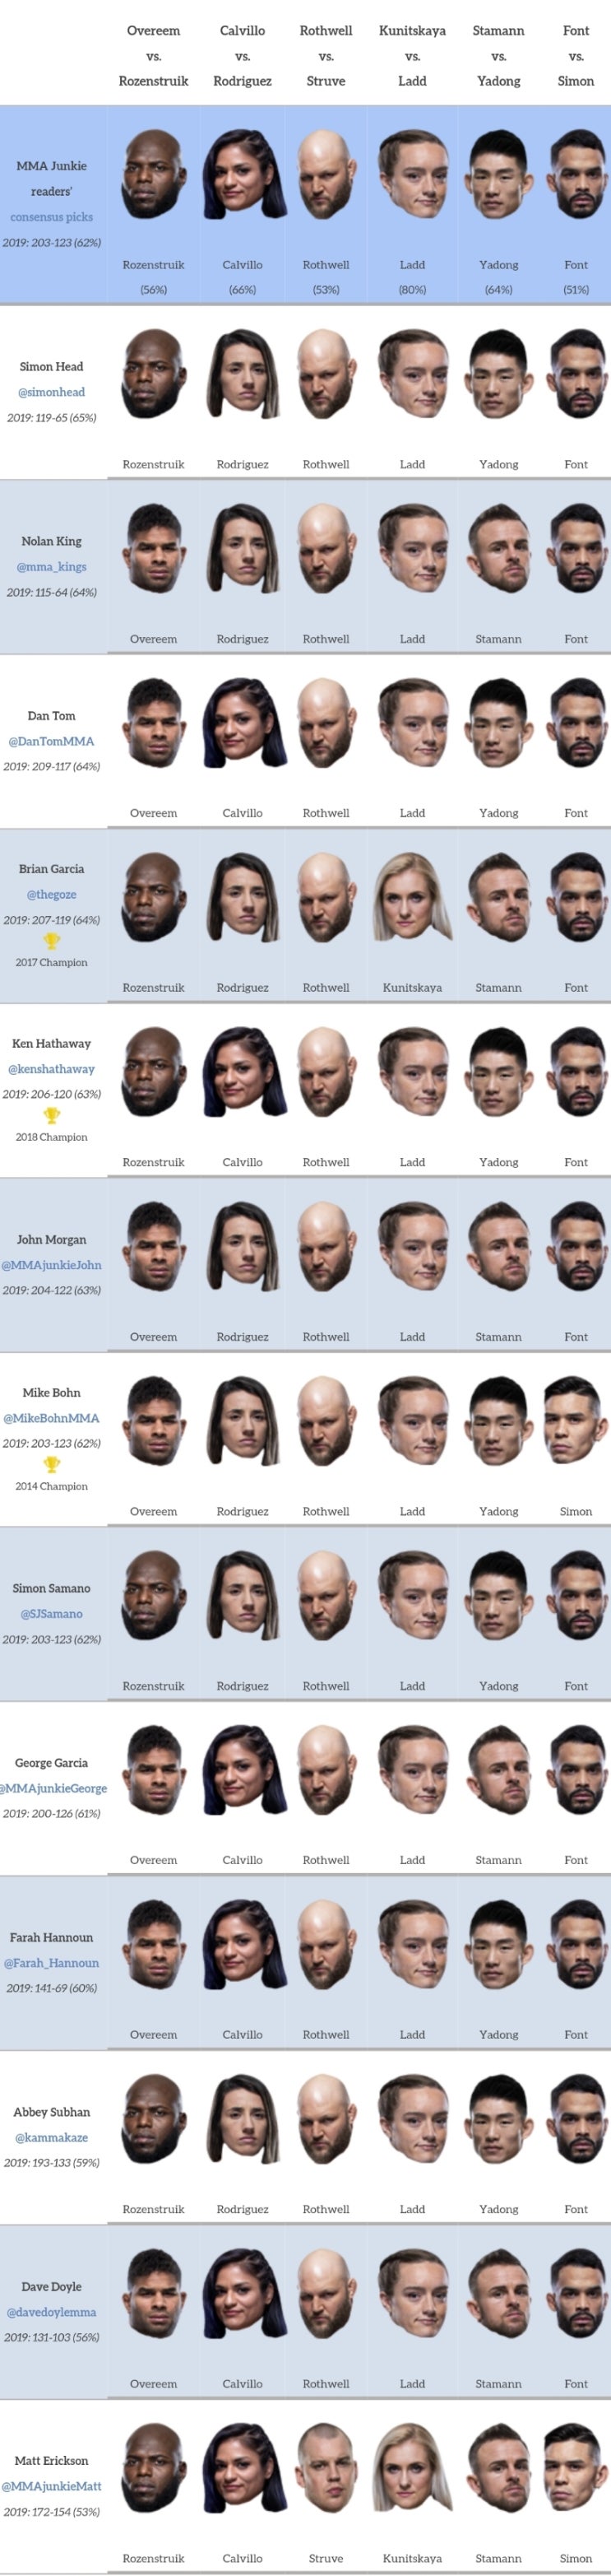 UFC 워싱턴 : 오브레임 vs 자이르지뉴 미디어 예상 및 배당률